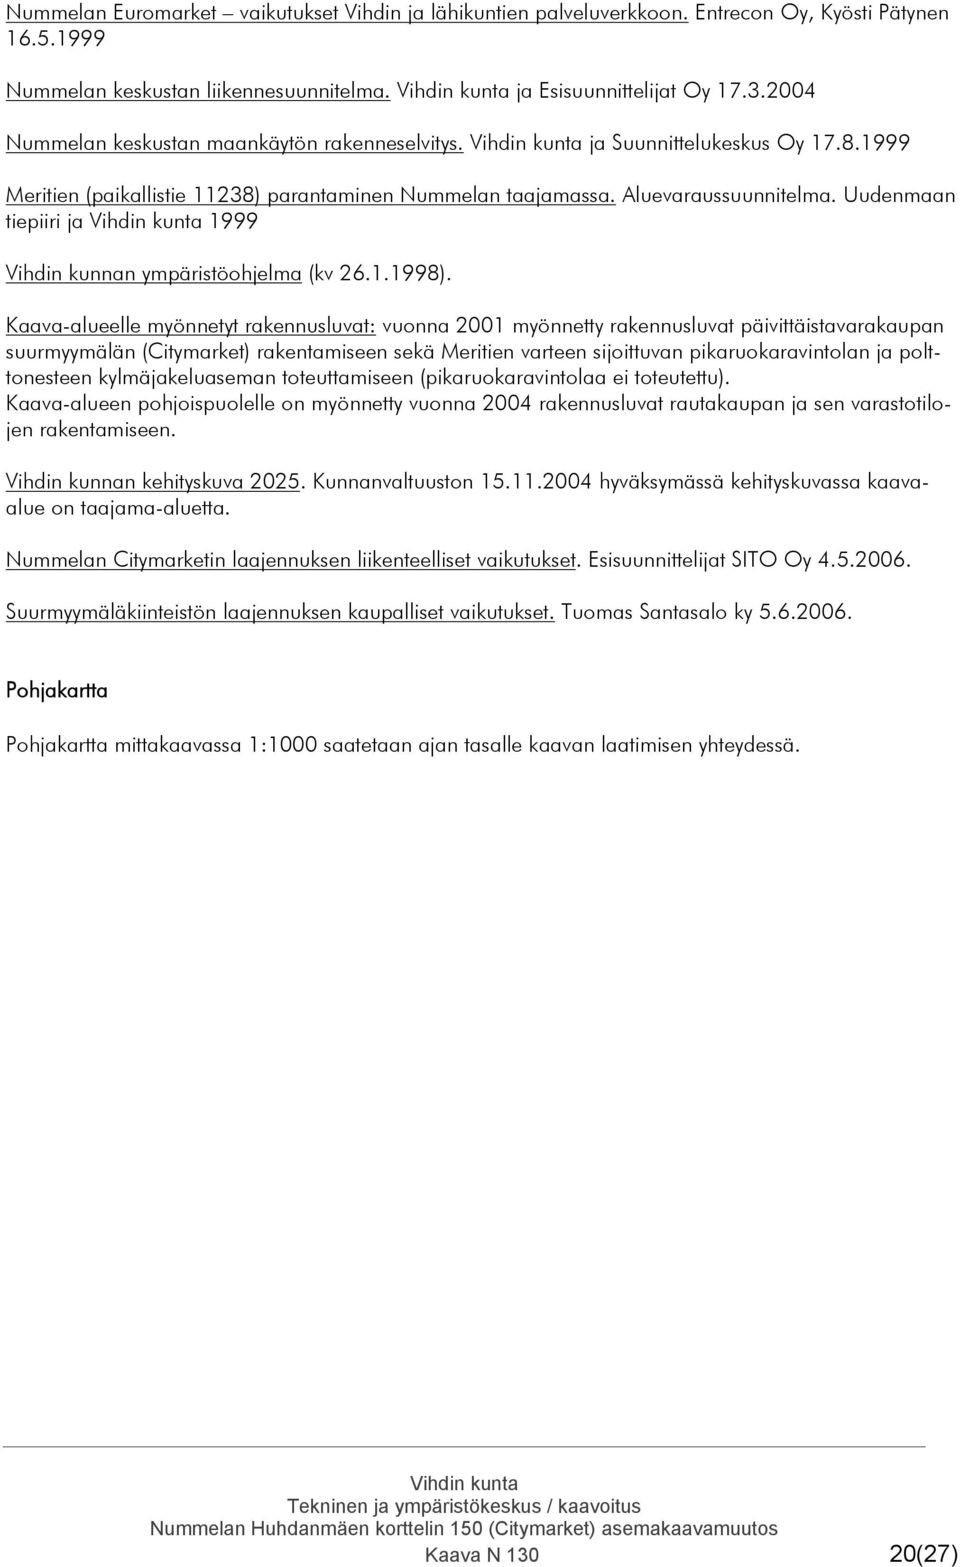 Uudenmaan tiepiiri ja 1999 Vihdin kunnan ympäristöohjelma (kv 26.1.1998).